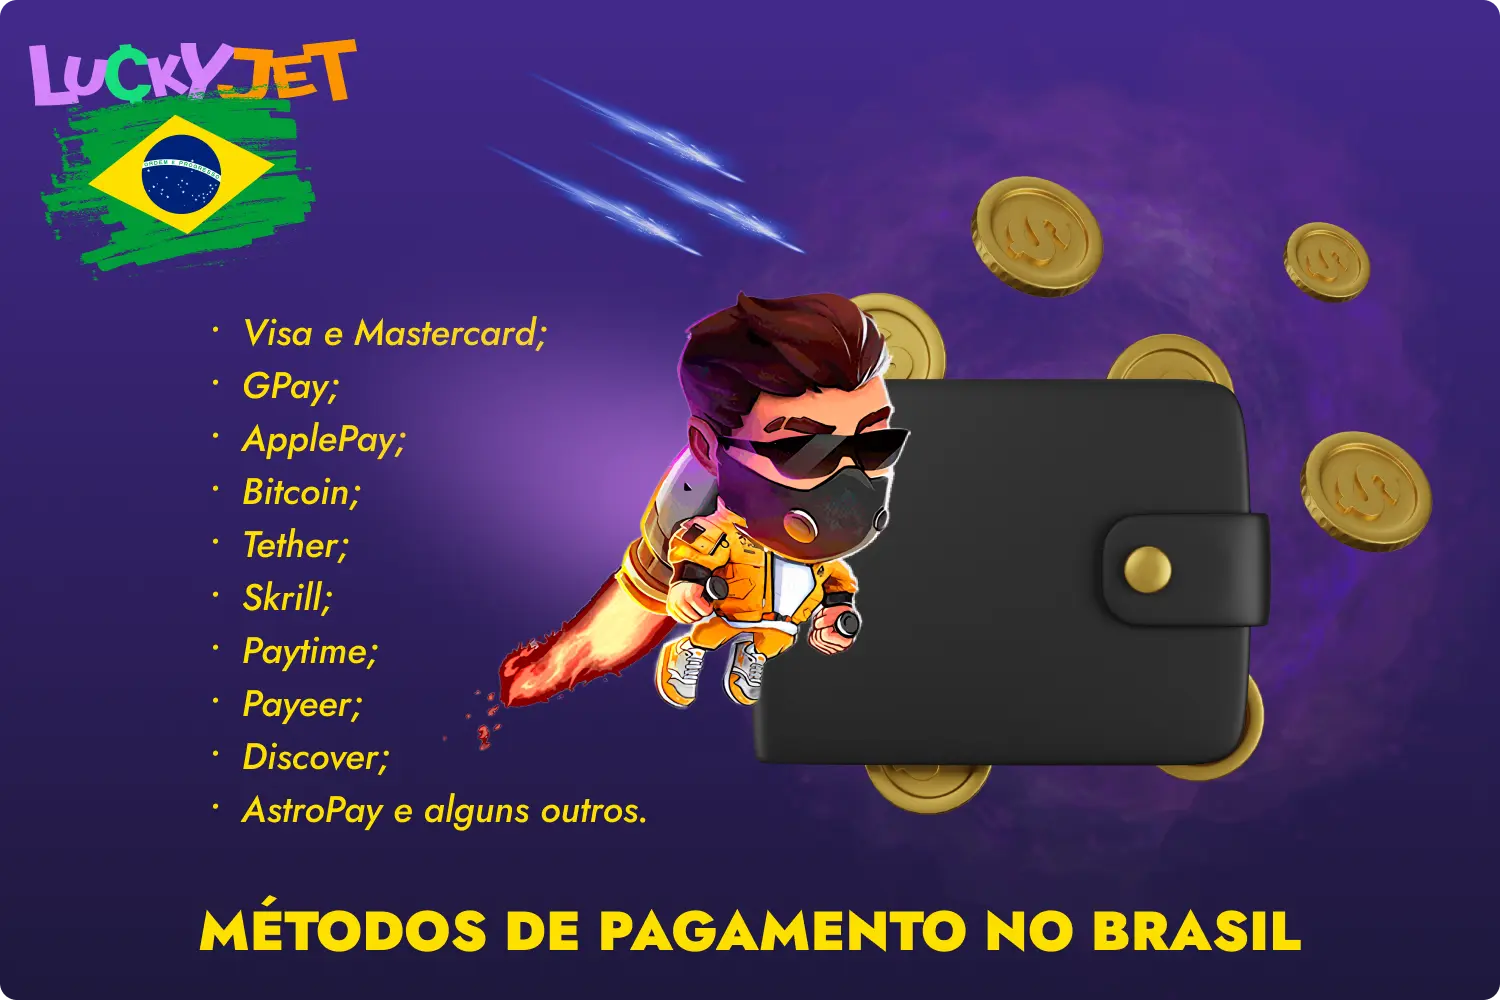 Os jogadores do Brasil poderão usufruir de todas as funcionalidades do Lucky Jet depois de depositarem e levantarem fundos se ganharem